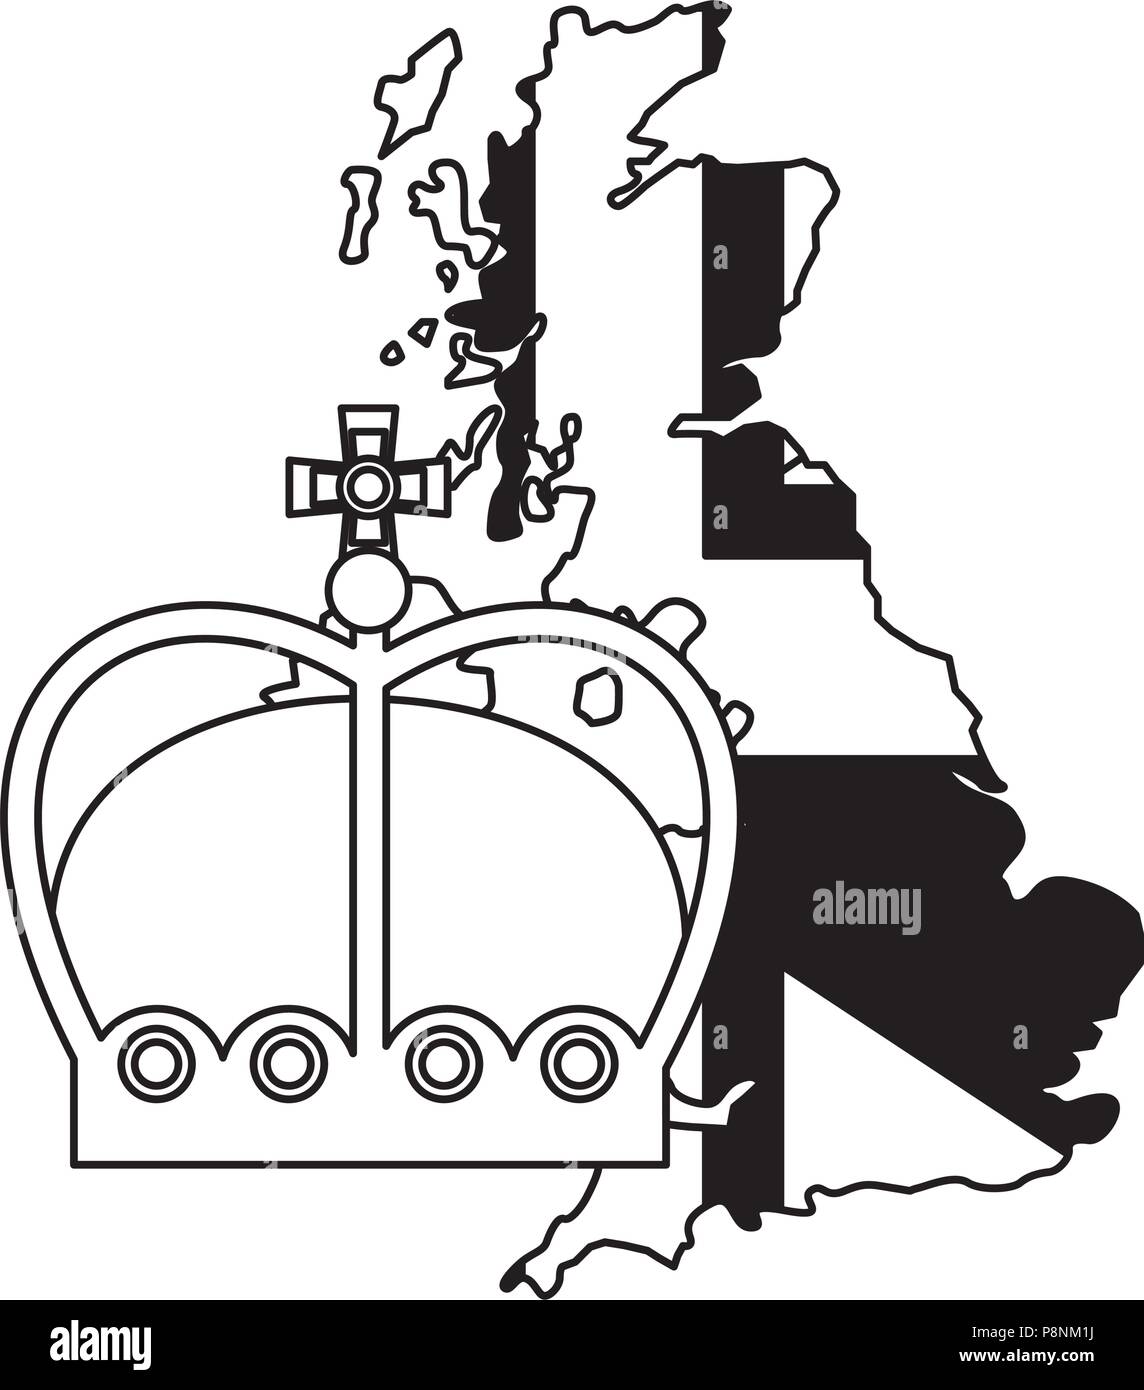 Regno Unito bandiera nella mappa e crown royalty illustrazione vettoriale in bianco e nero Illustrazione Vettoriale